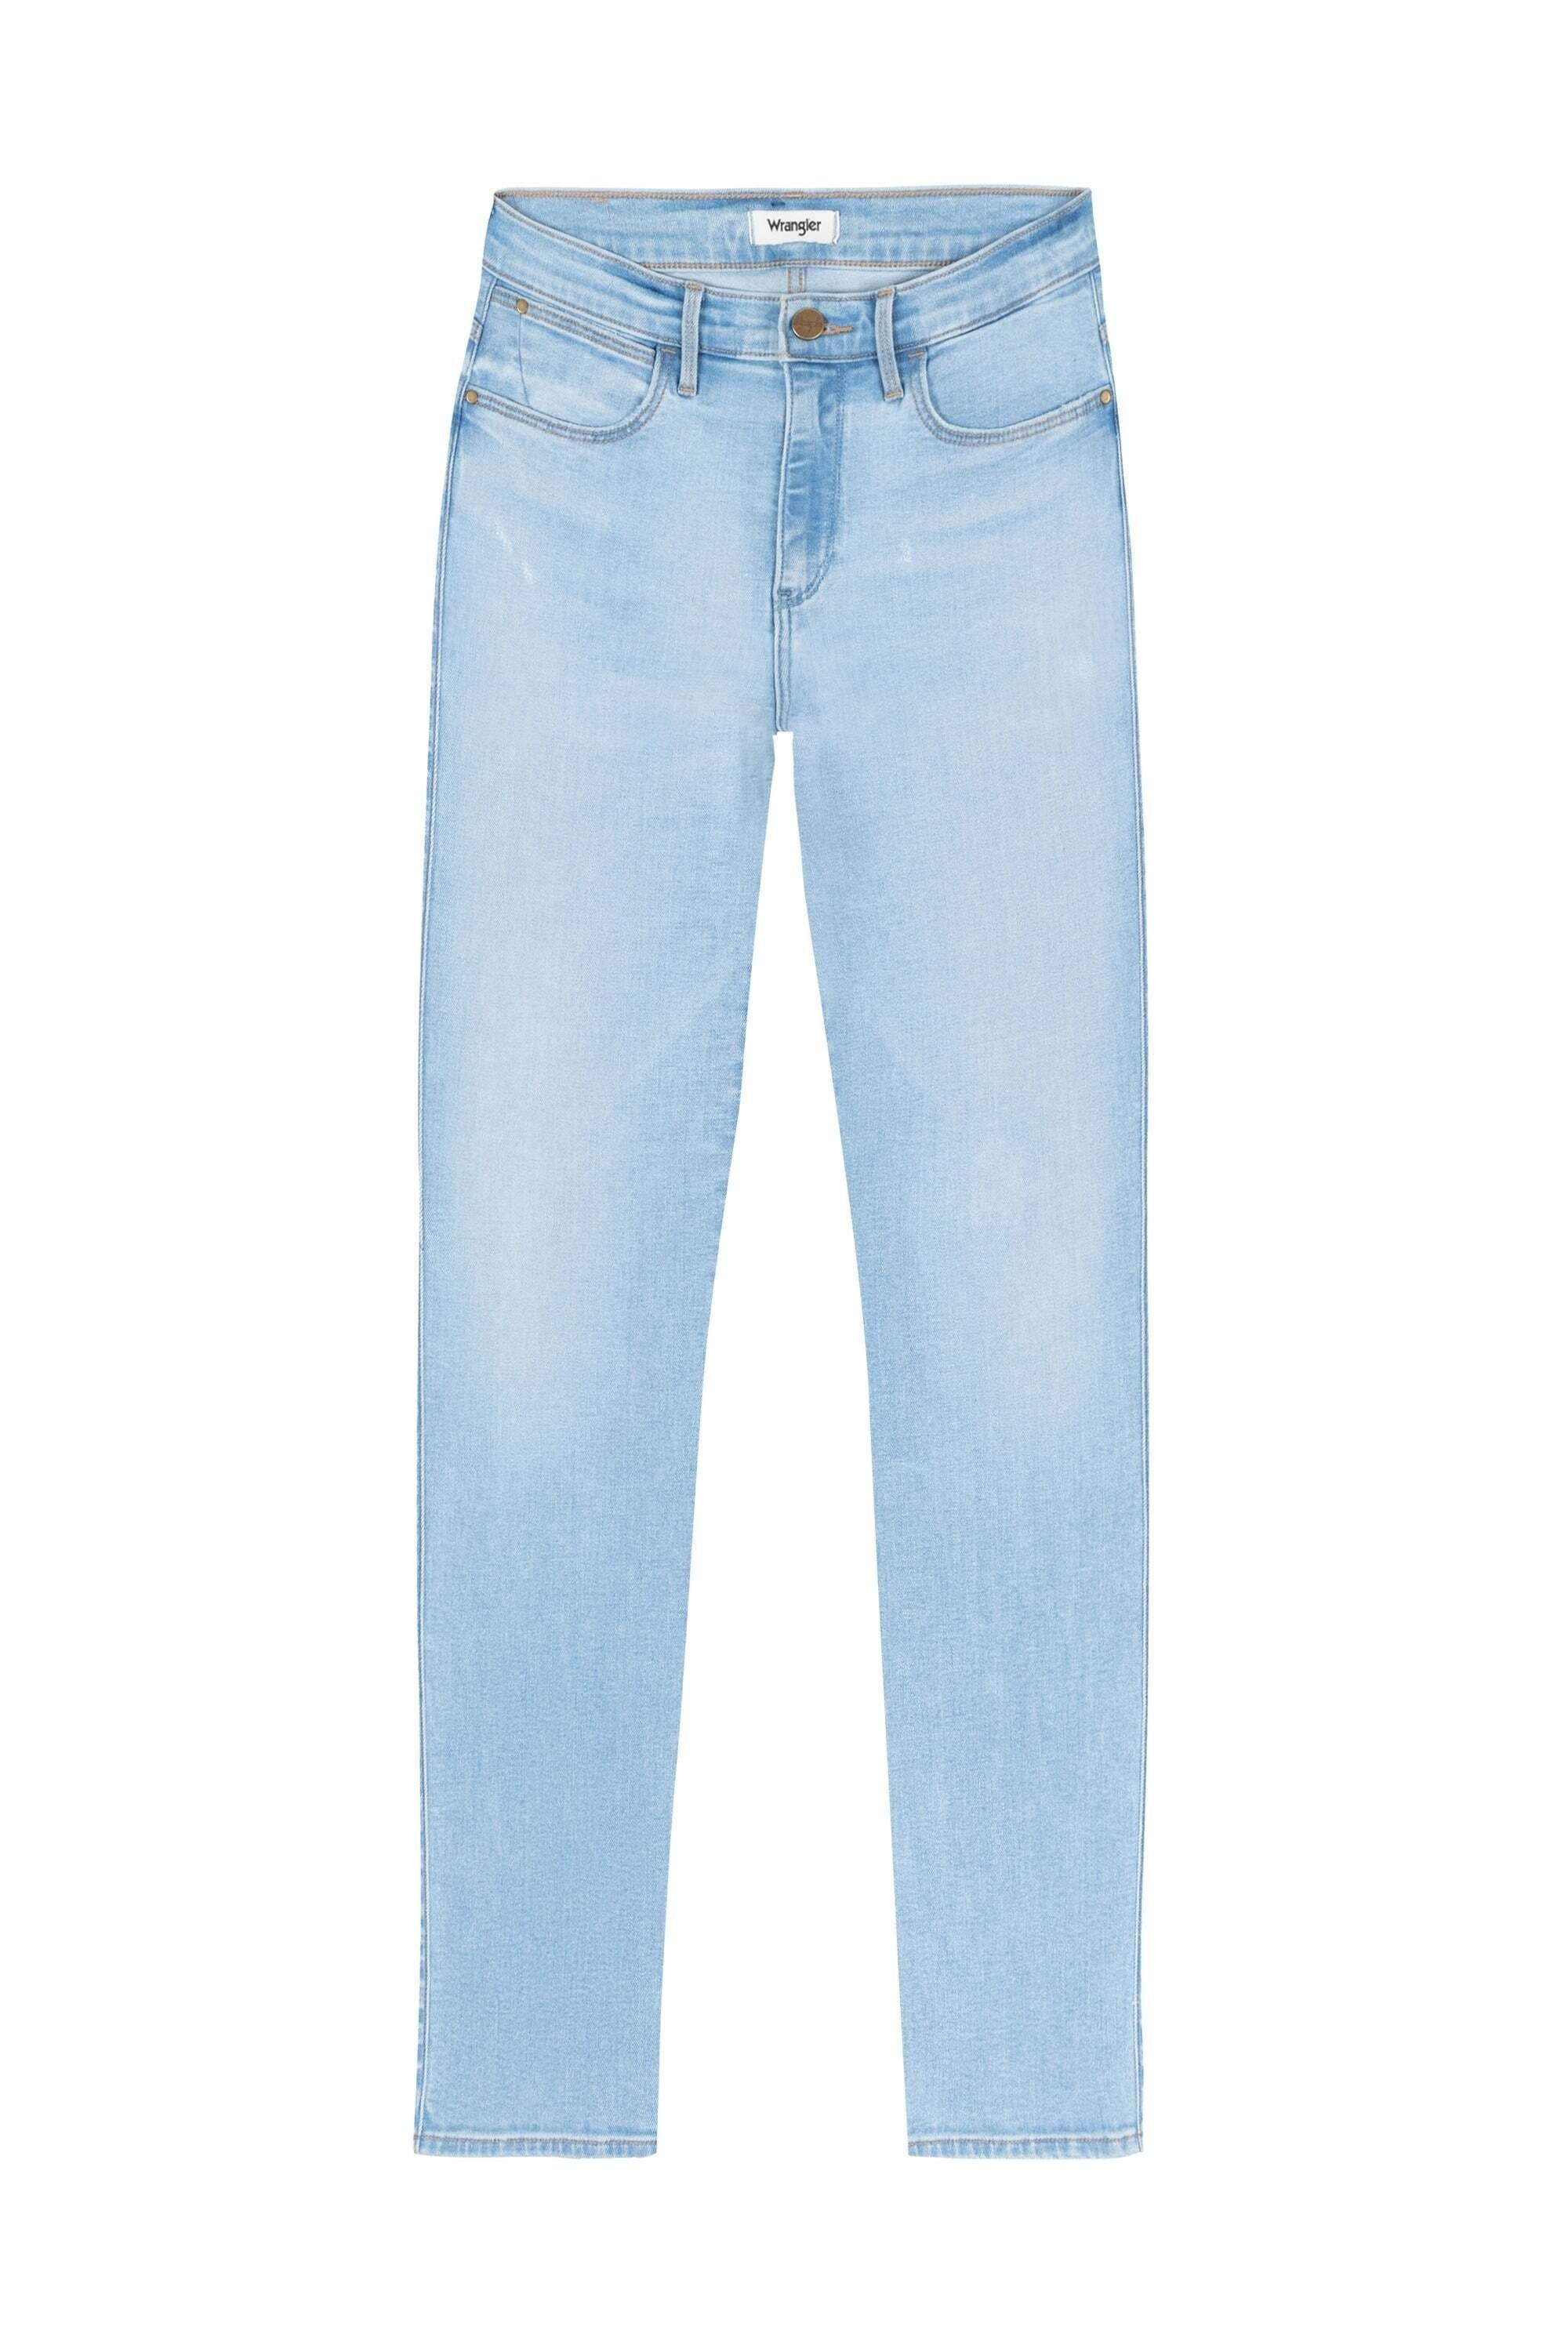 Wrangler  Jeans High Skinny 